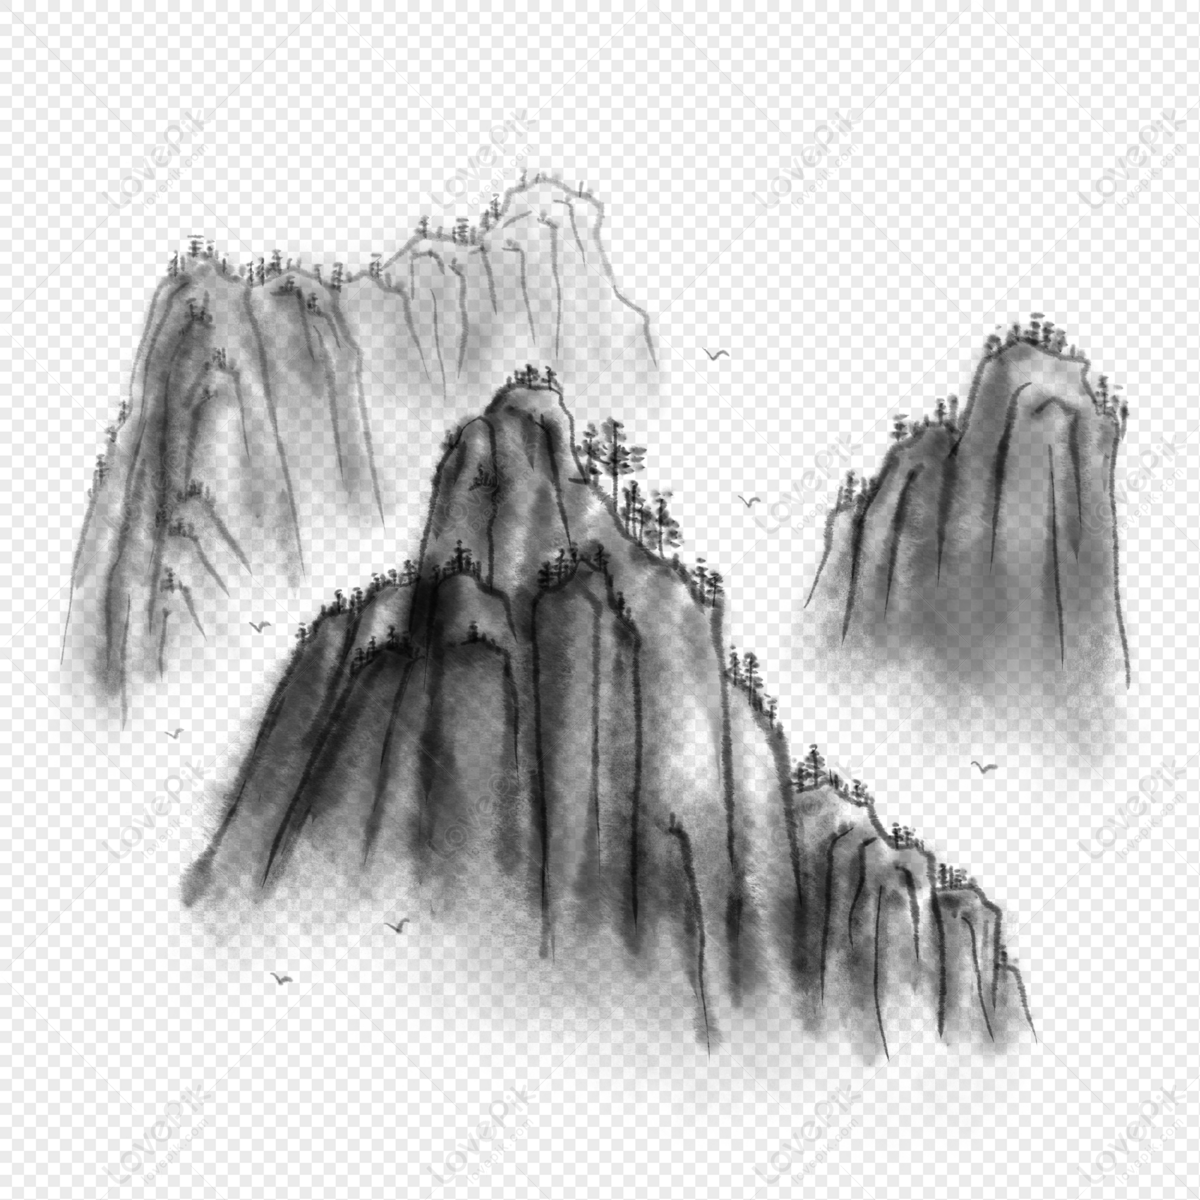 Phong cách Trung Quốc truyền thống được thể hiện qua hình ảnh đỉnh núi mực Trung Hoa. Đây là truyền thống có từ hàng trăm năm qua, được thể hiện qua các bức tranh vẽ, đặc biệt là tranh mực Trung Quốc. Xem hình ảnh Chinese Style Ink Mountain Peak để cảm nhận sức hấp dẫn của phong cách Trung Hoa.